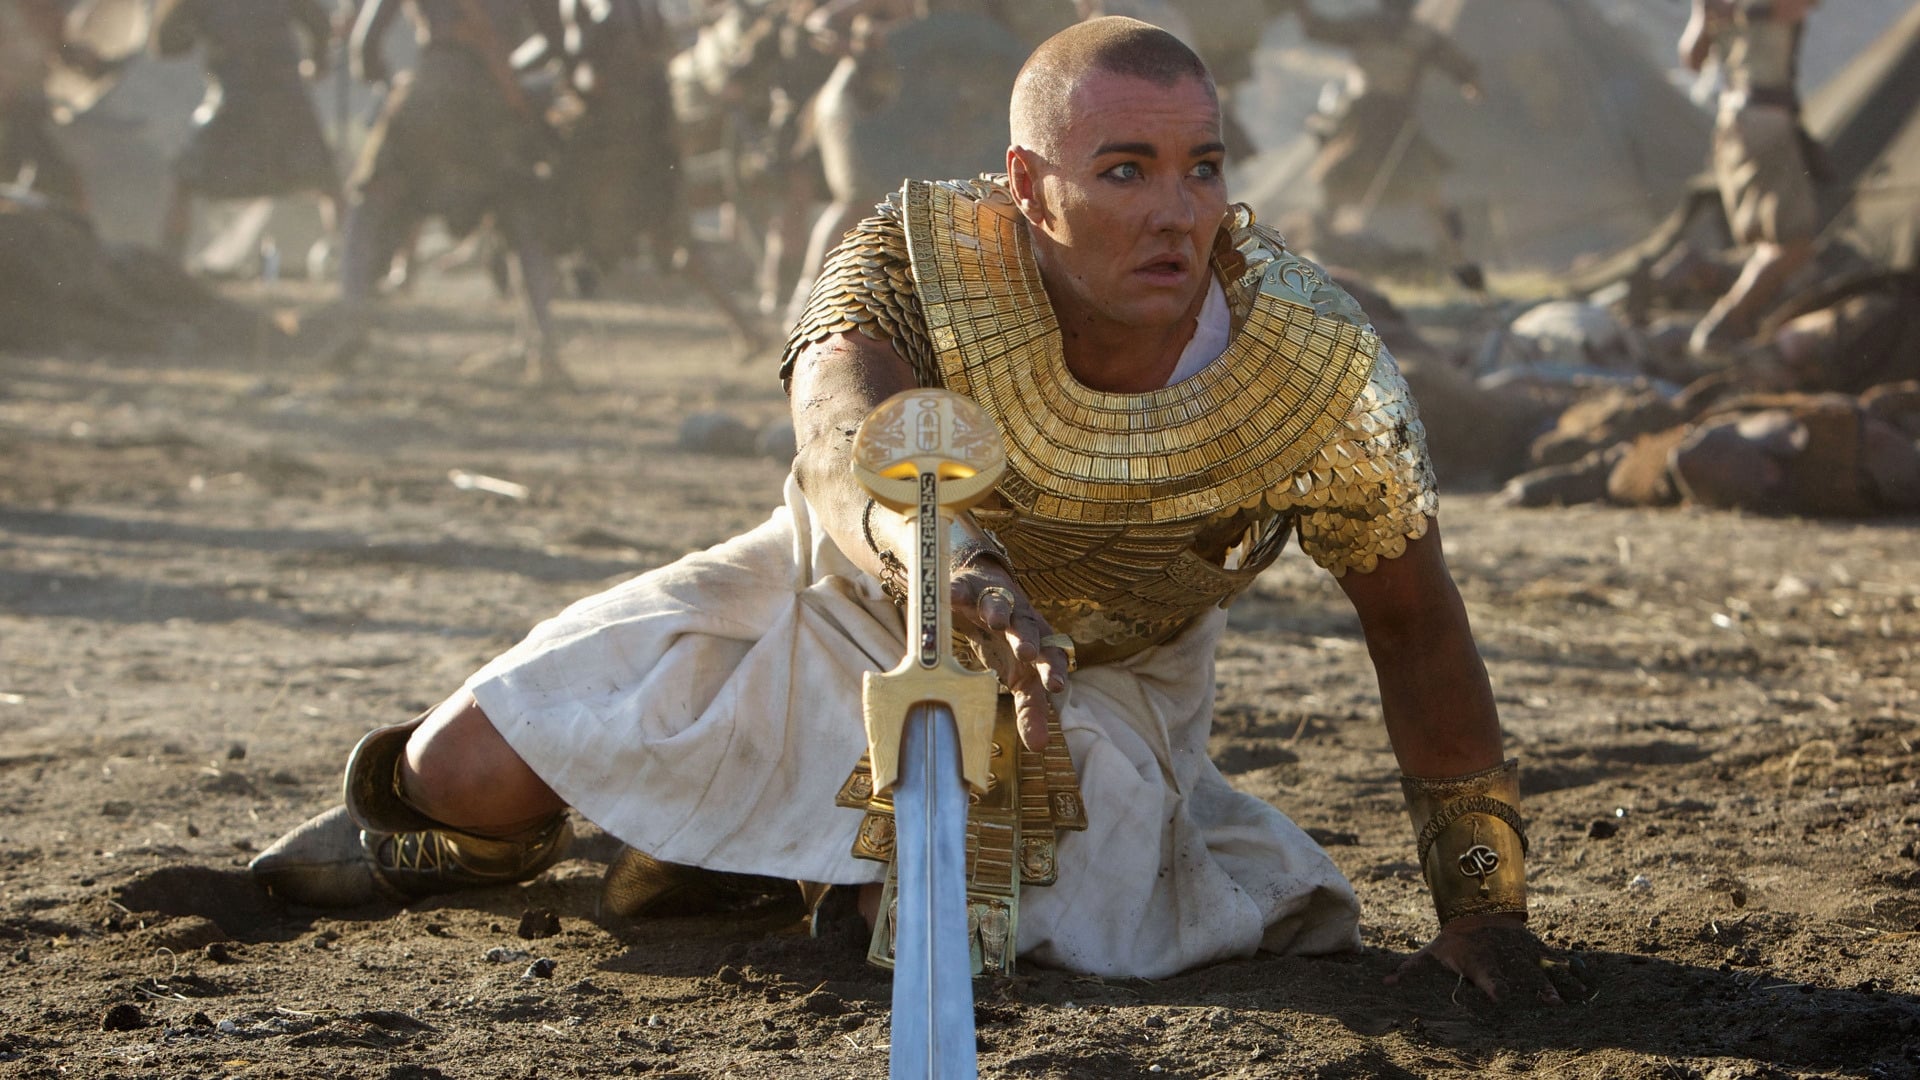 Exodus: Cuộc Chiến Chống Pha-ra-ông (2014)